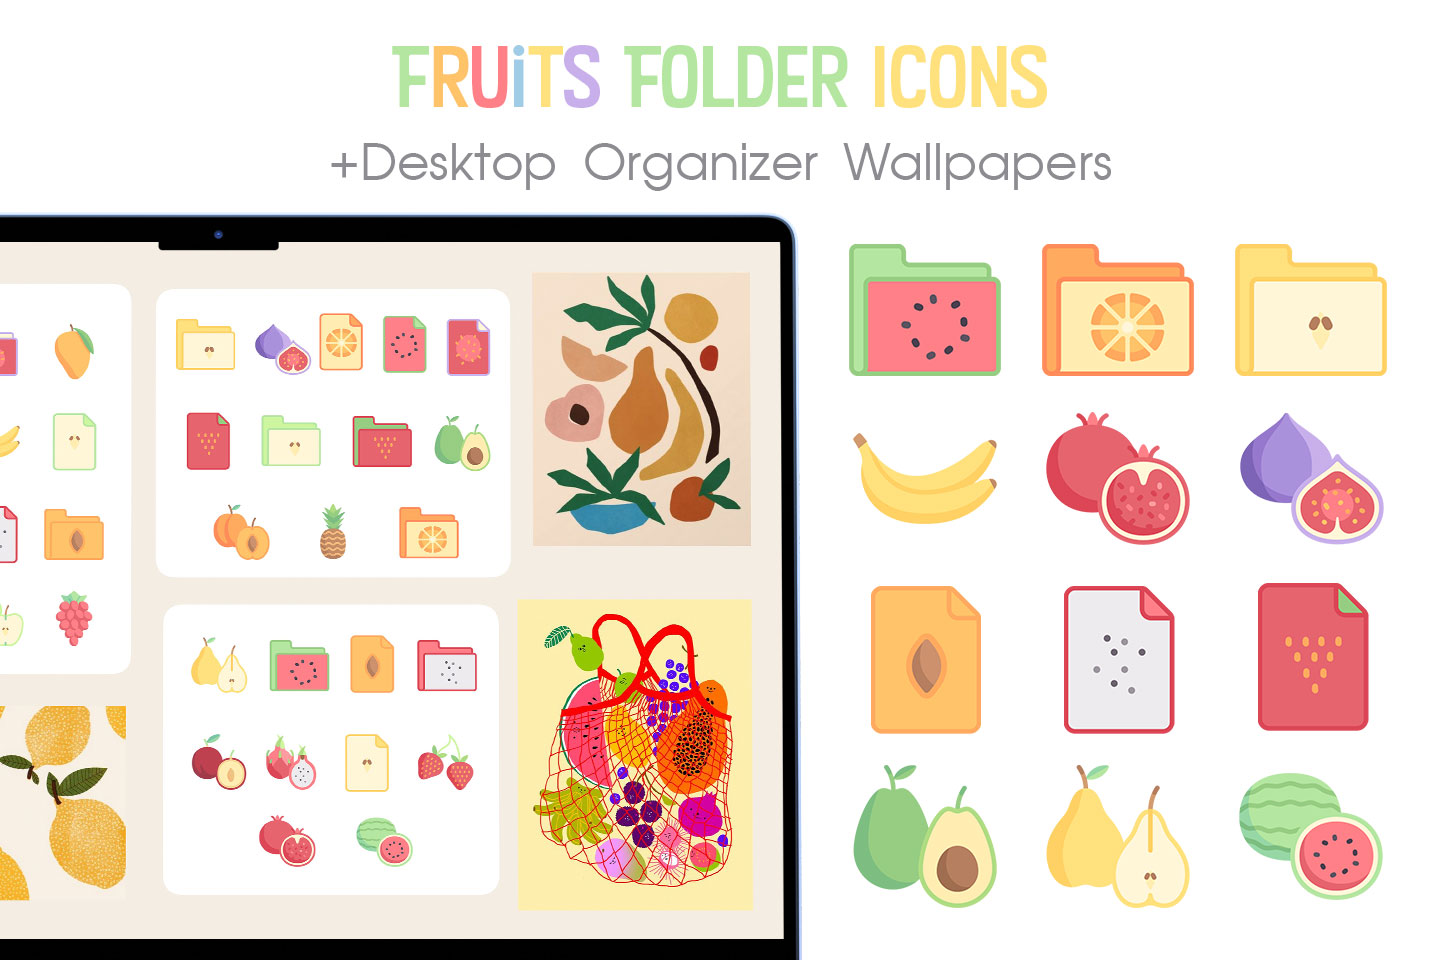 Paquete de iconos de la carpeta de frutas